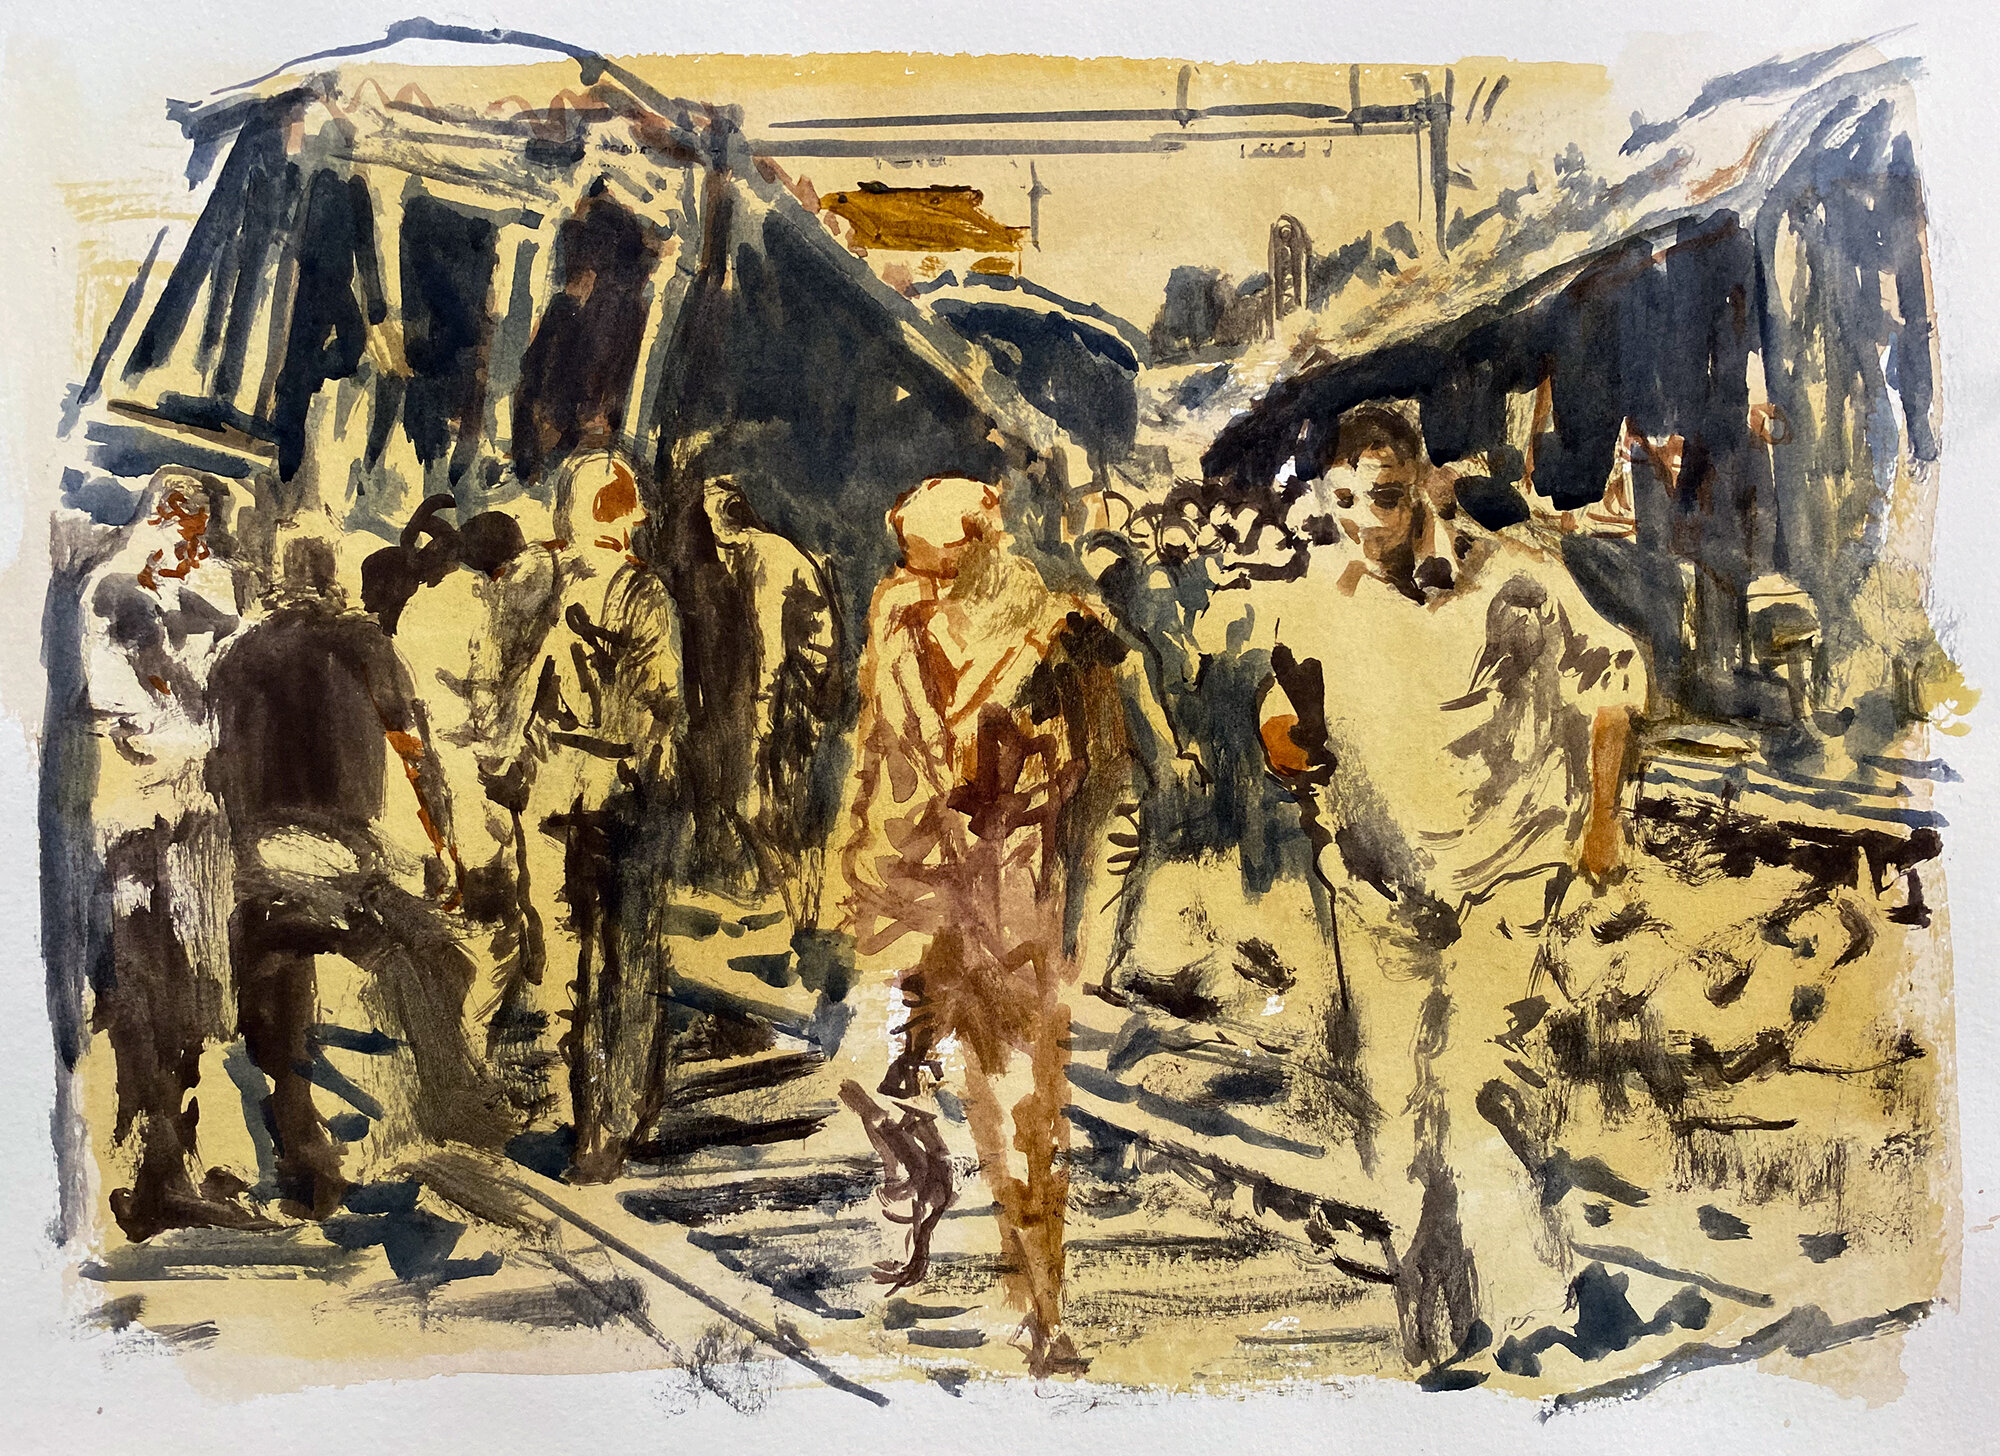 Train derailment (Zagreb), watercolor on paper, 2020